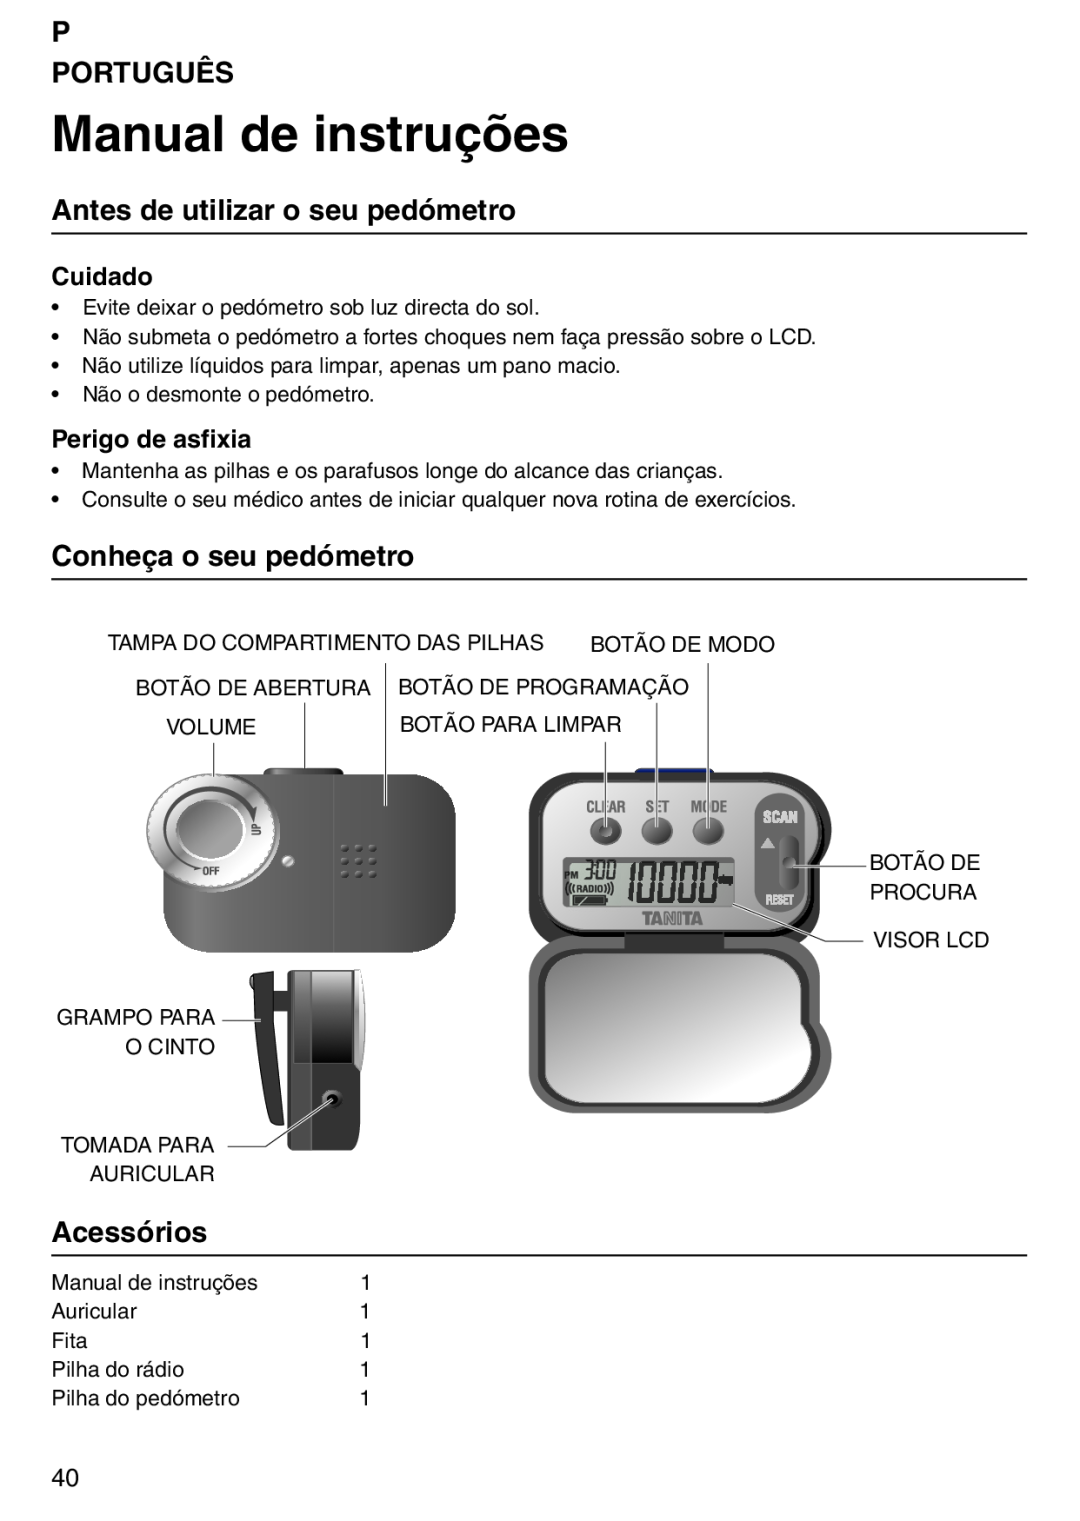 Tanita PD640 Manual de instruções, P Português, Antes de utilizar o seu pedómetro, Conheça o seu pedómetro, Acessórios 